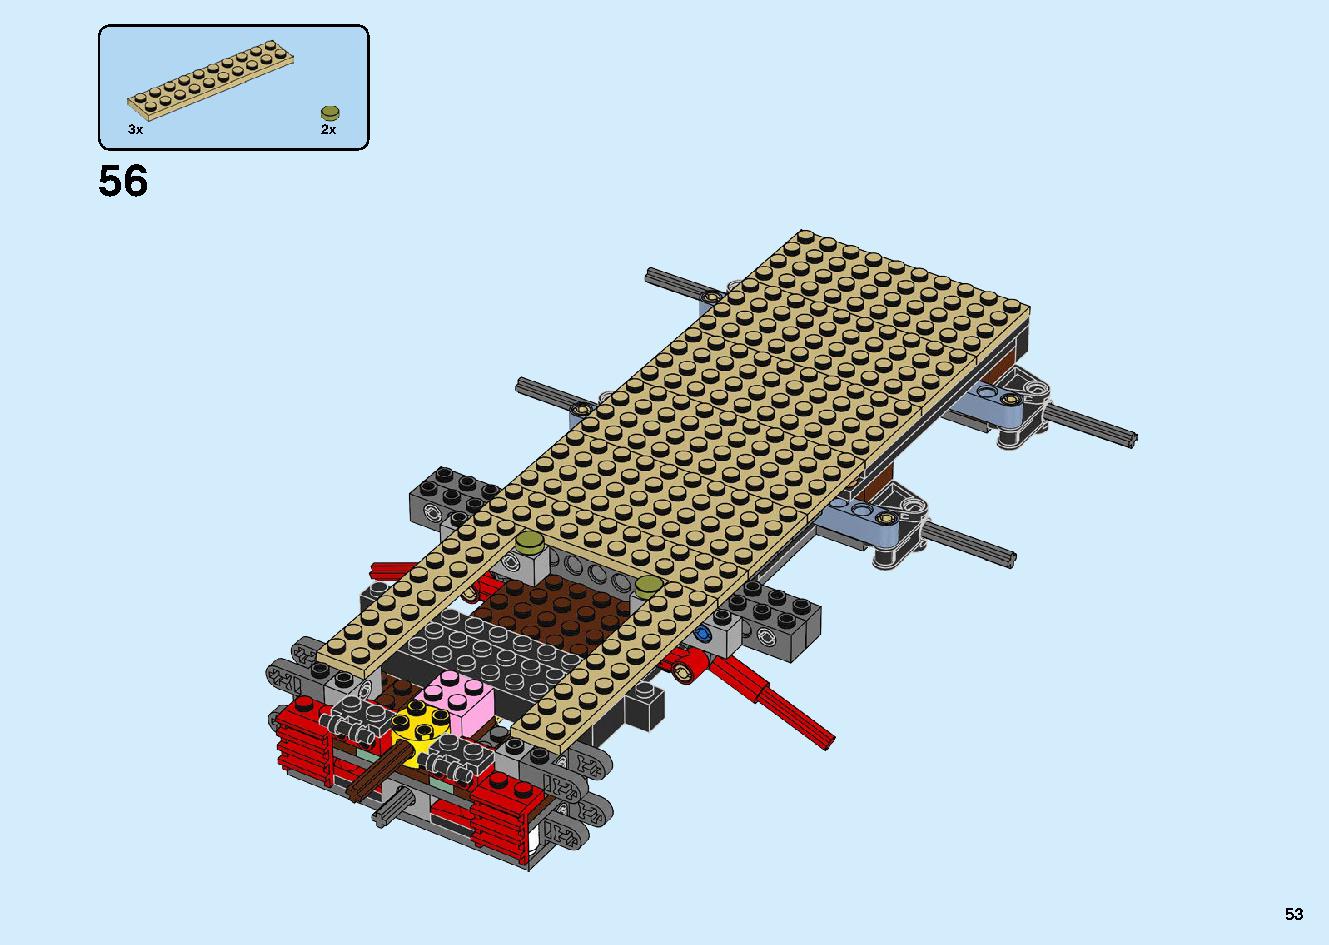 陸上戦艦バウンティ号 70677 レゴの商品情報 レゴの説明書・組立方法 53 page